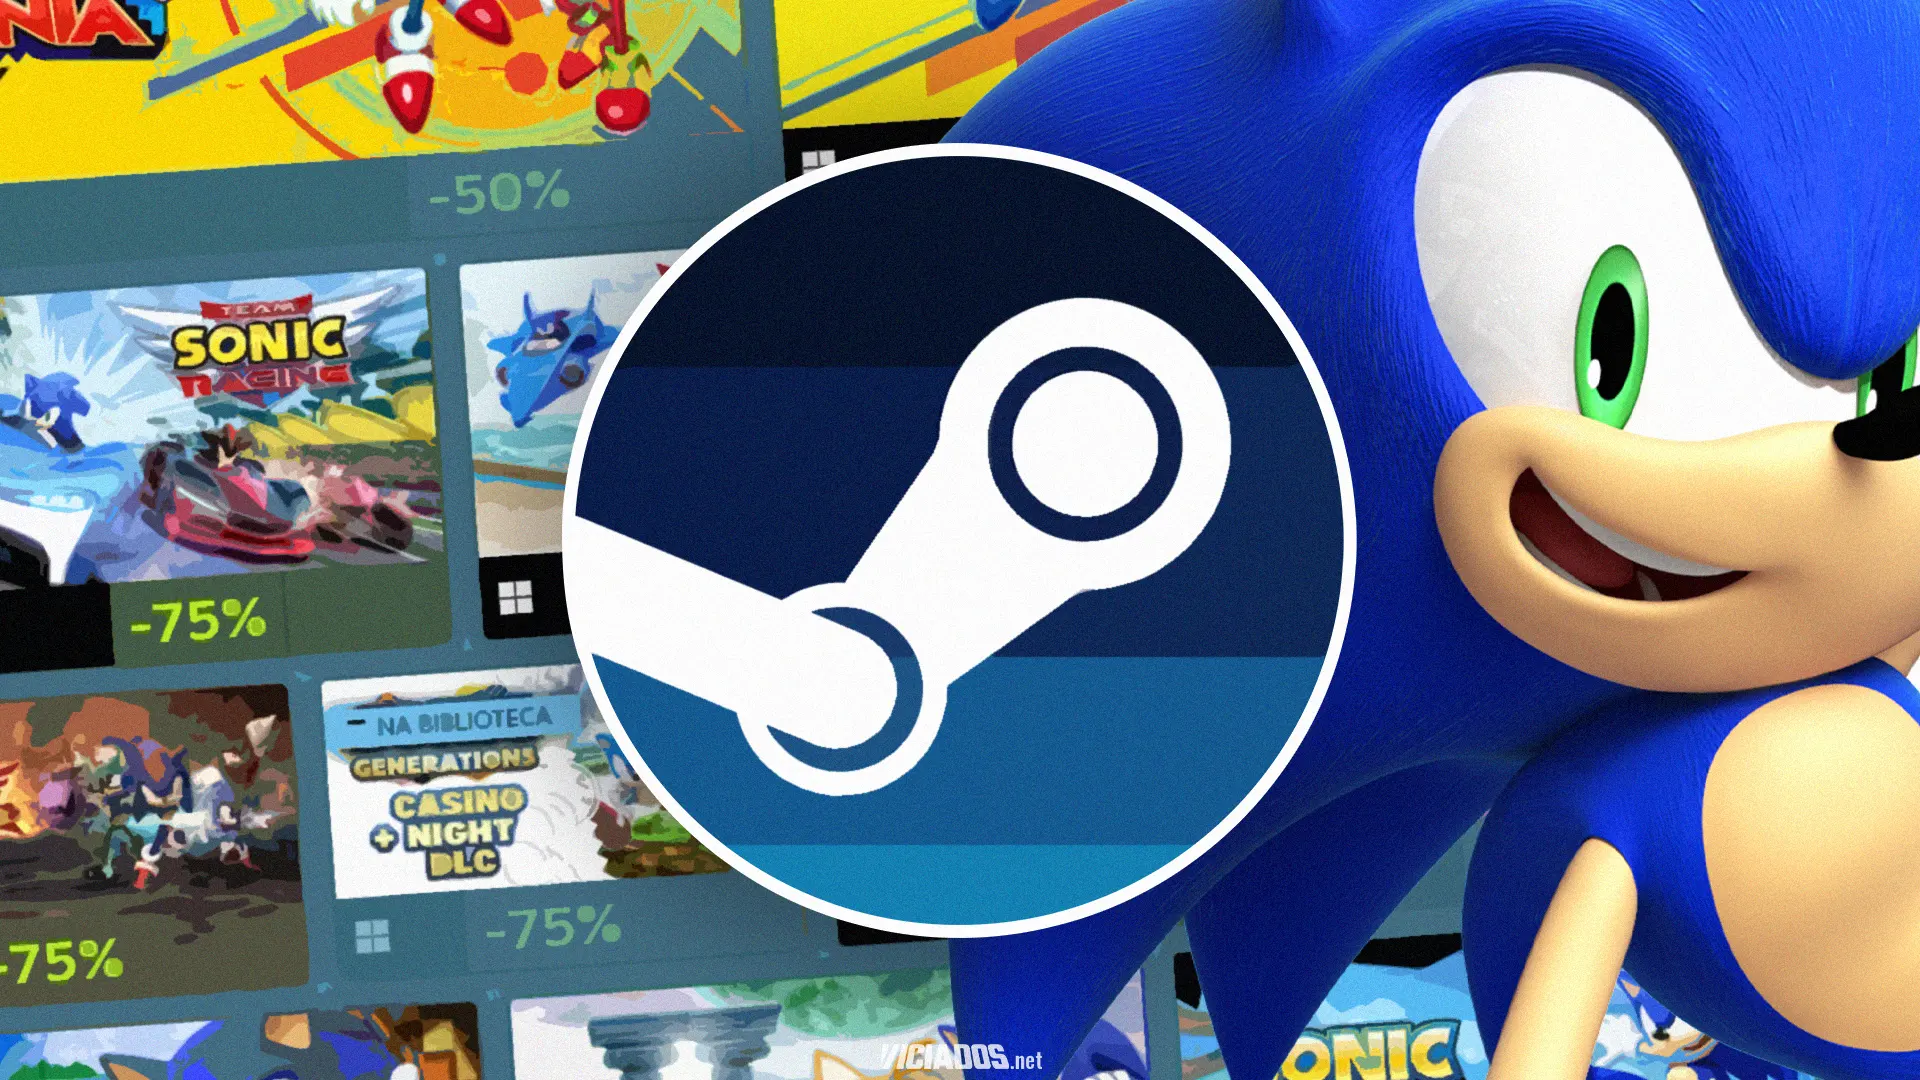 Steam | Jogos do Sonic estão com ótimos preços em nova promoção 2023 Viciados